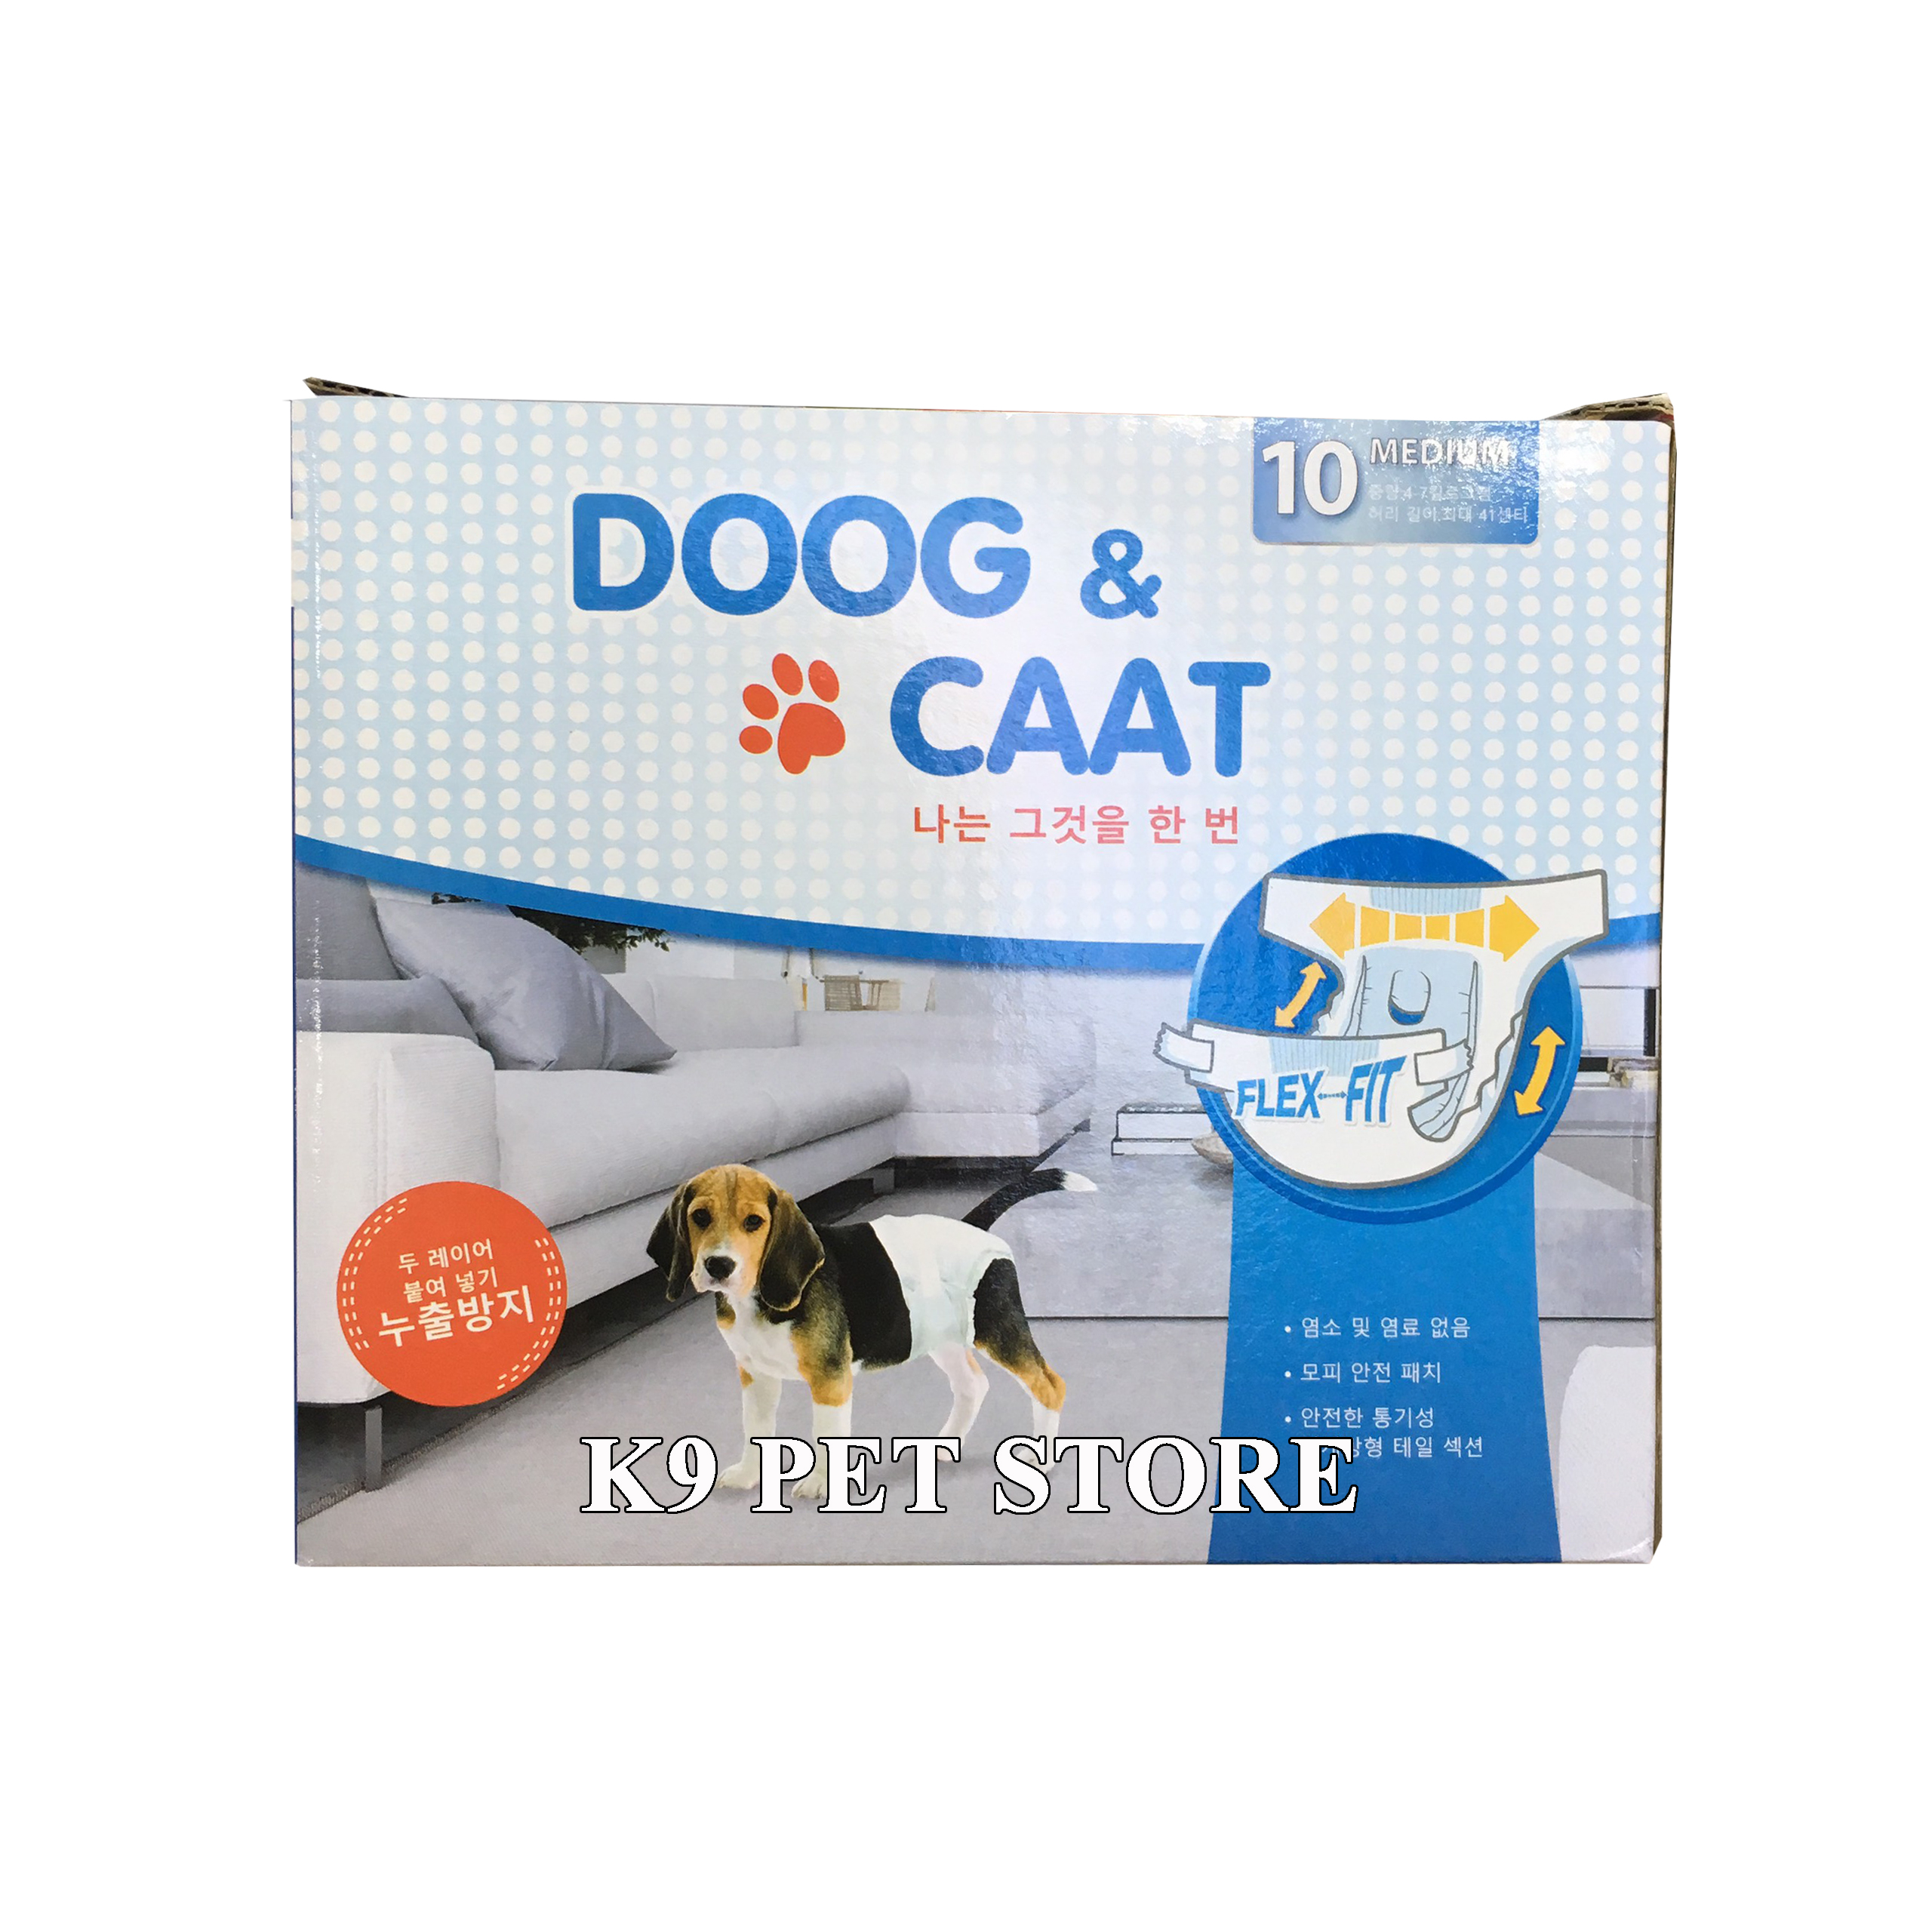 Bỉm mặc, tả quần hiệu Doog & Caat cho chó cái size M 4-7kg